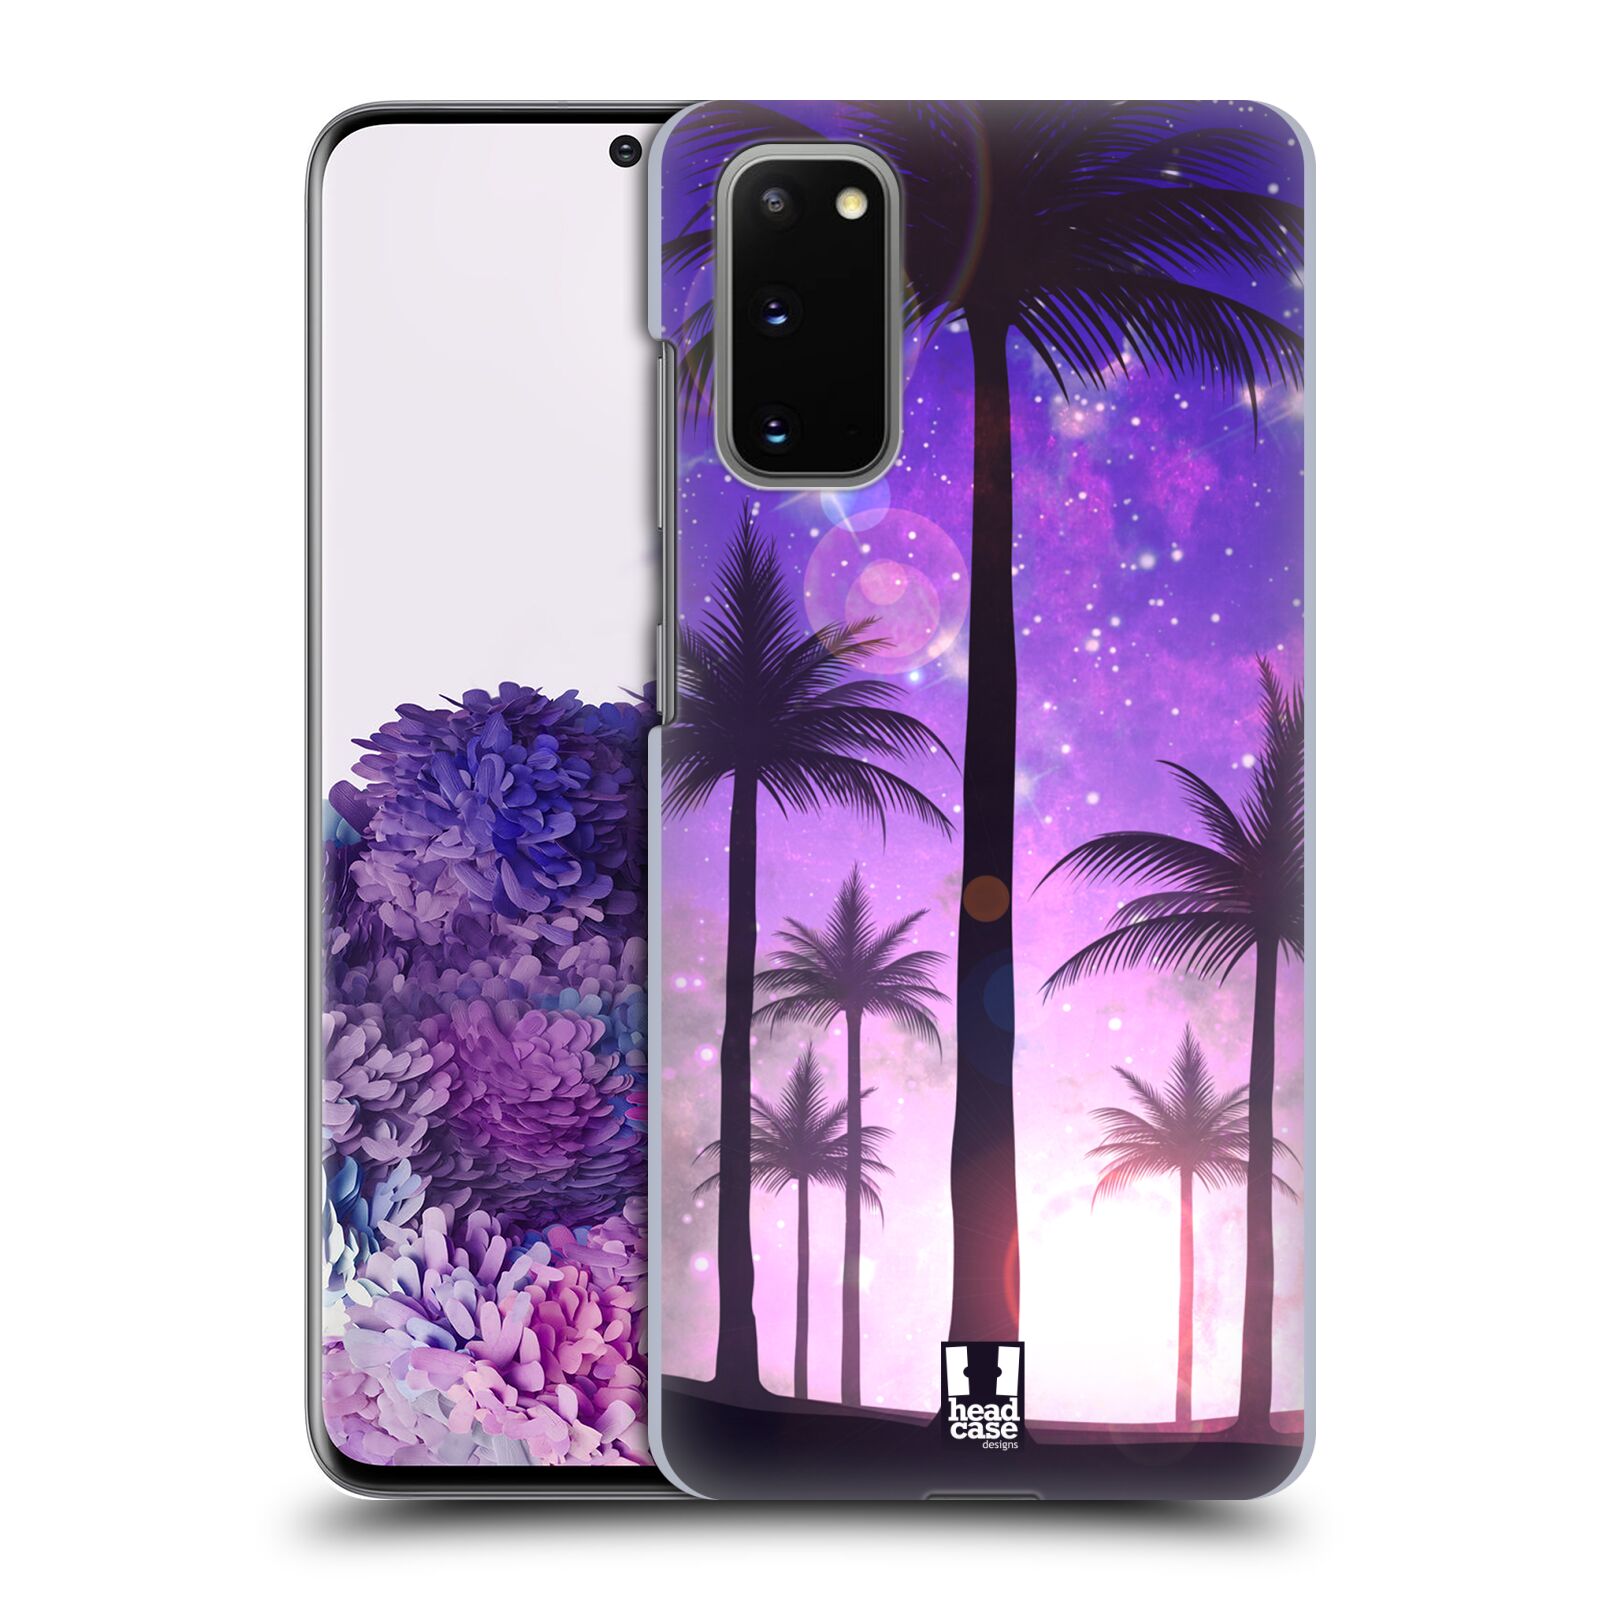 Pouzdro na mobil Samsung Galaxy S20 - HEAD CASE - vzor Kreslený motiv silueta moře a palmy FIALOVÁ